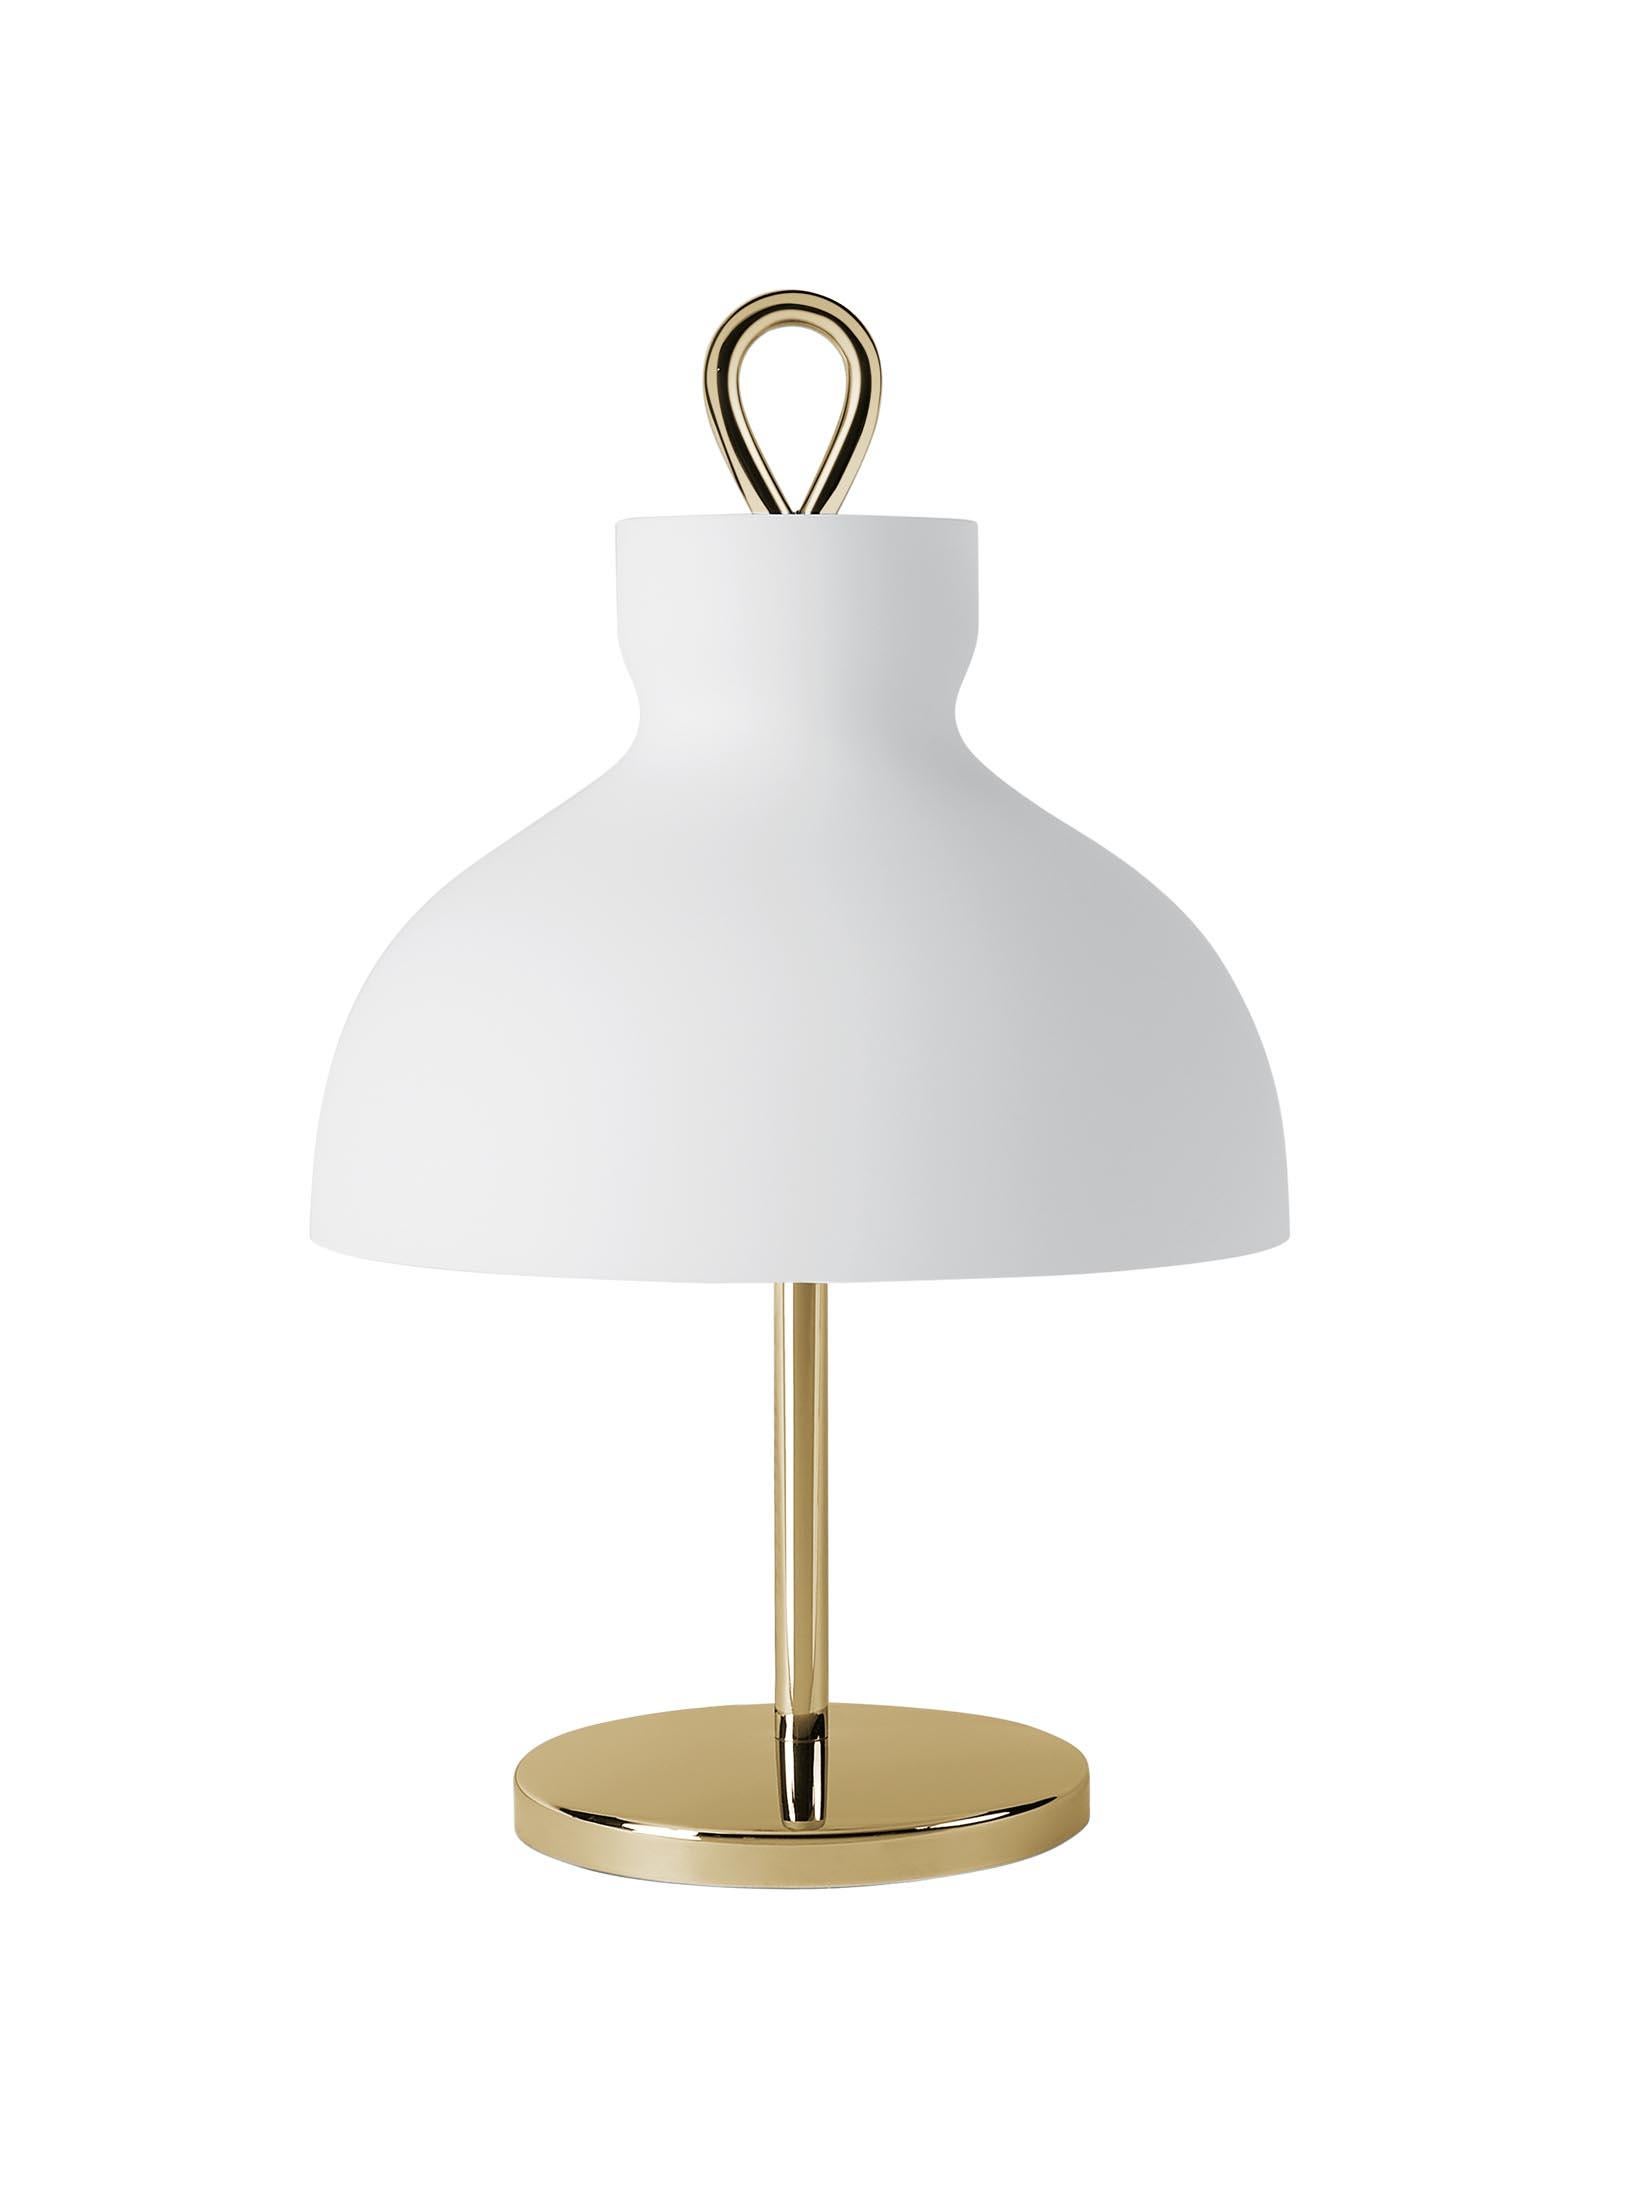 Ignazio Gardella 'Arenzano Bassa' Table Lamp in Chrome and Glass for Tato Italia For Sale 1